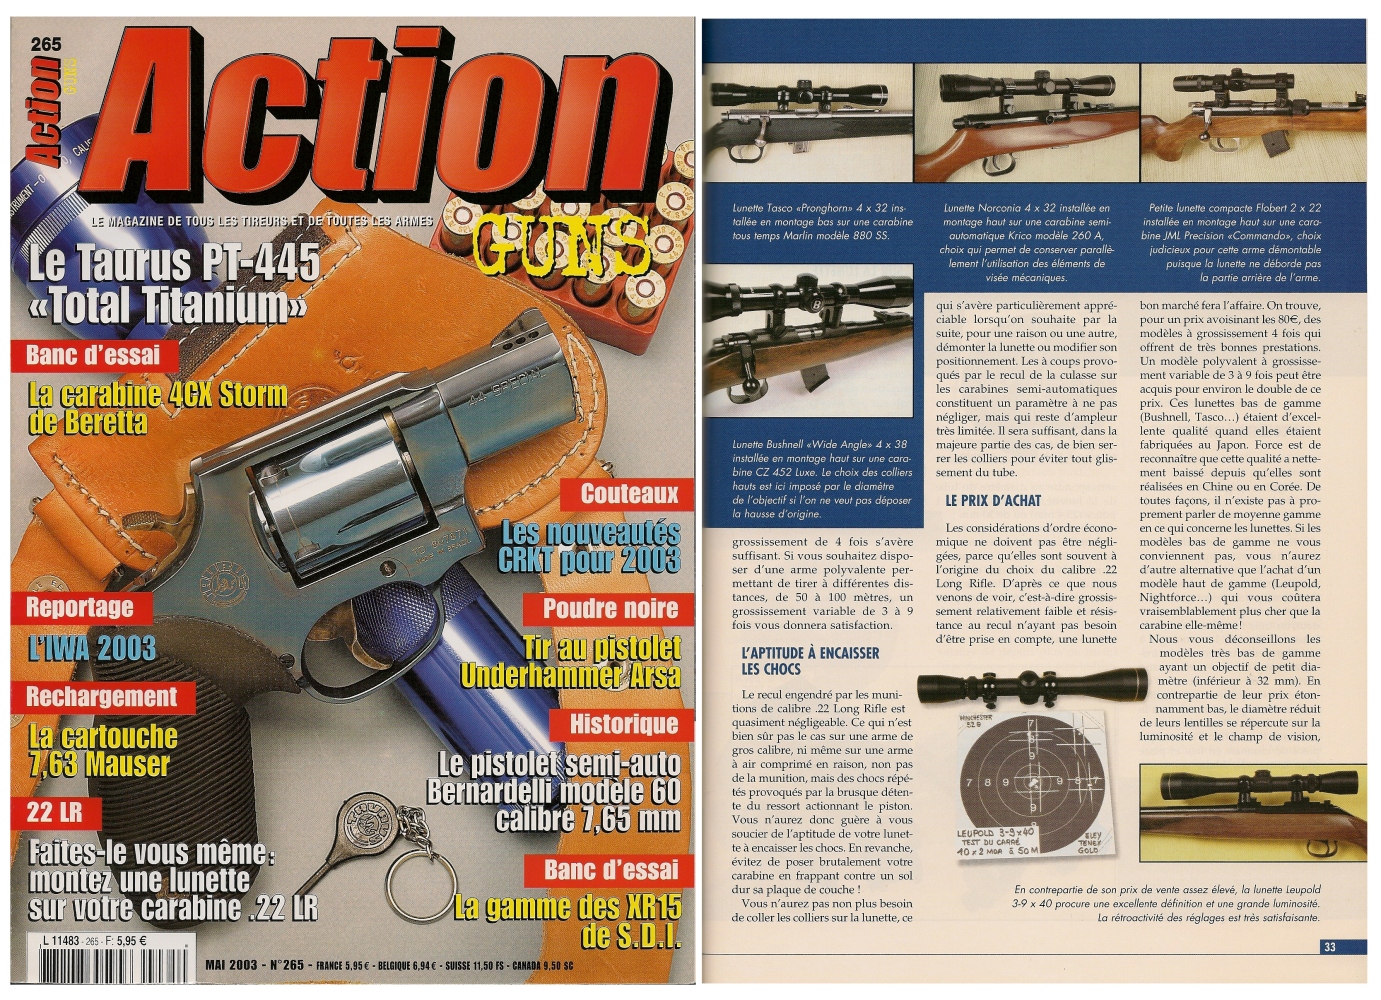 Le banc d’essai des lunettes de tir a été publié sur 5 pages Dans le magazine Action Guns n° 265 (mai 2003). 